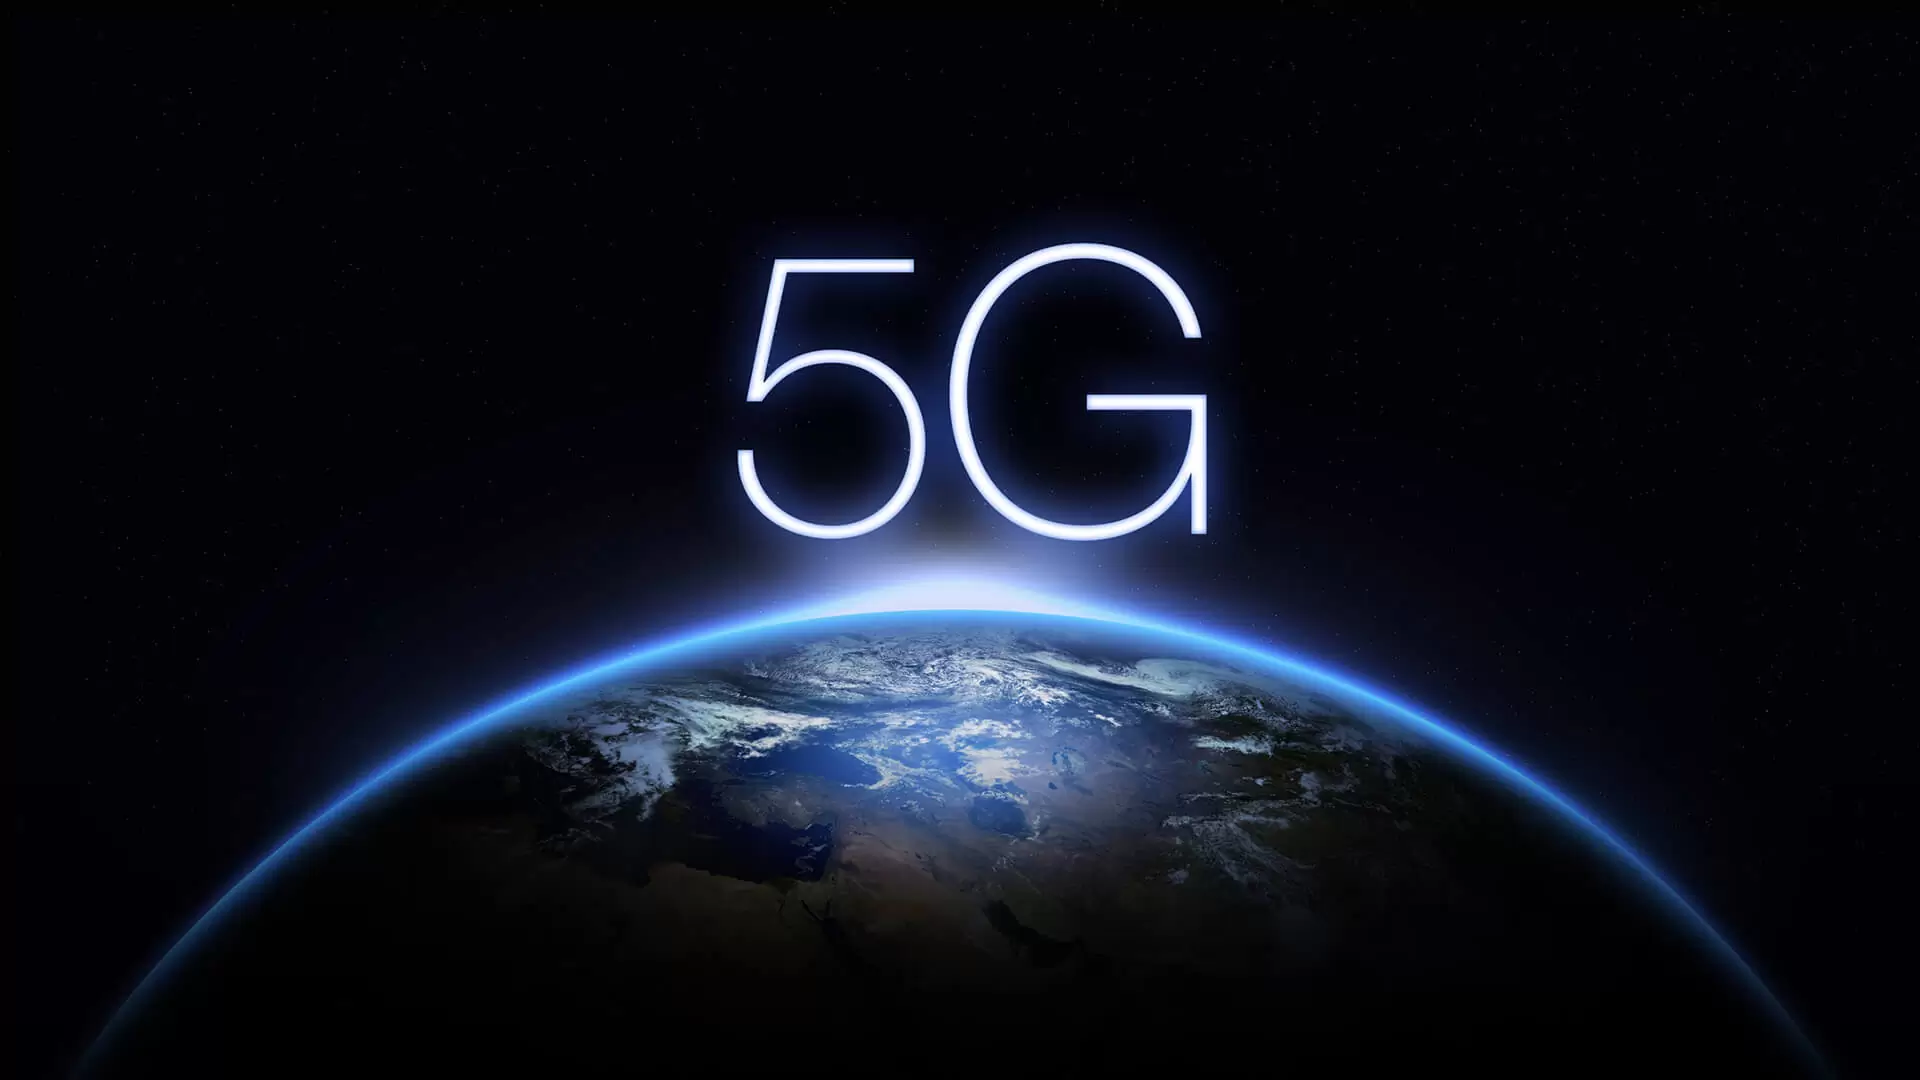 internet 5G chega a mais 5 capitais